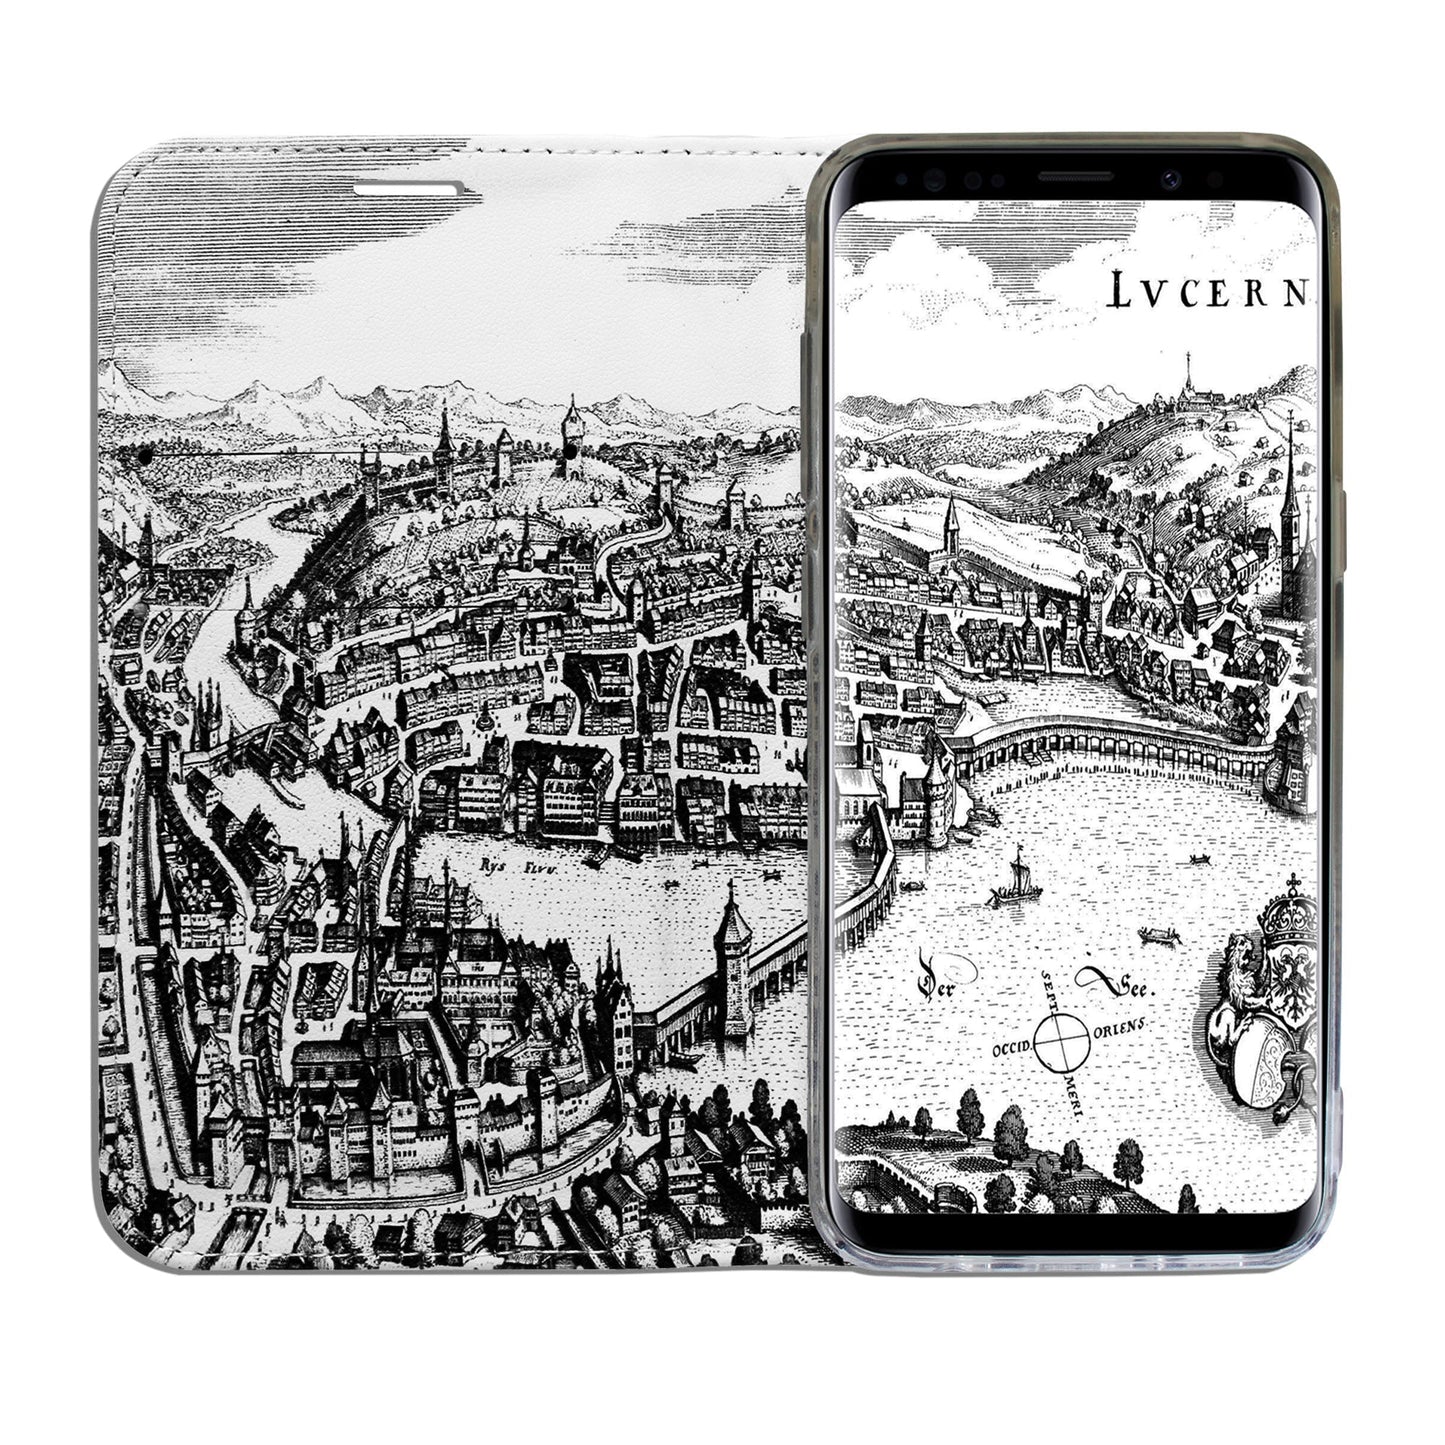 Luzern City Panorama Case für Samsung Galaxy S7